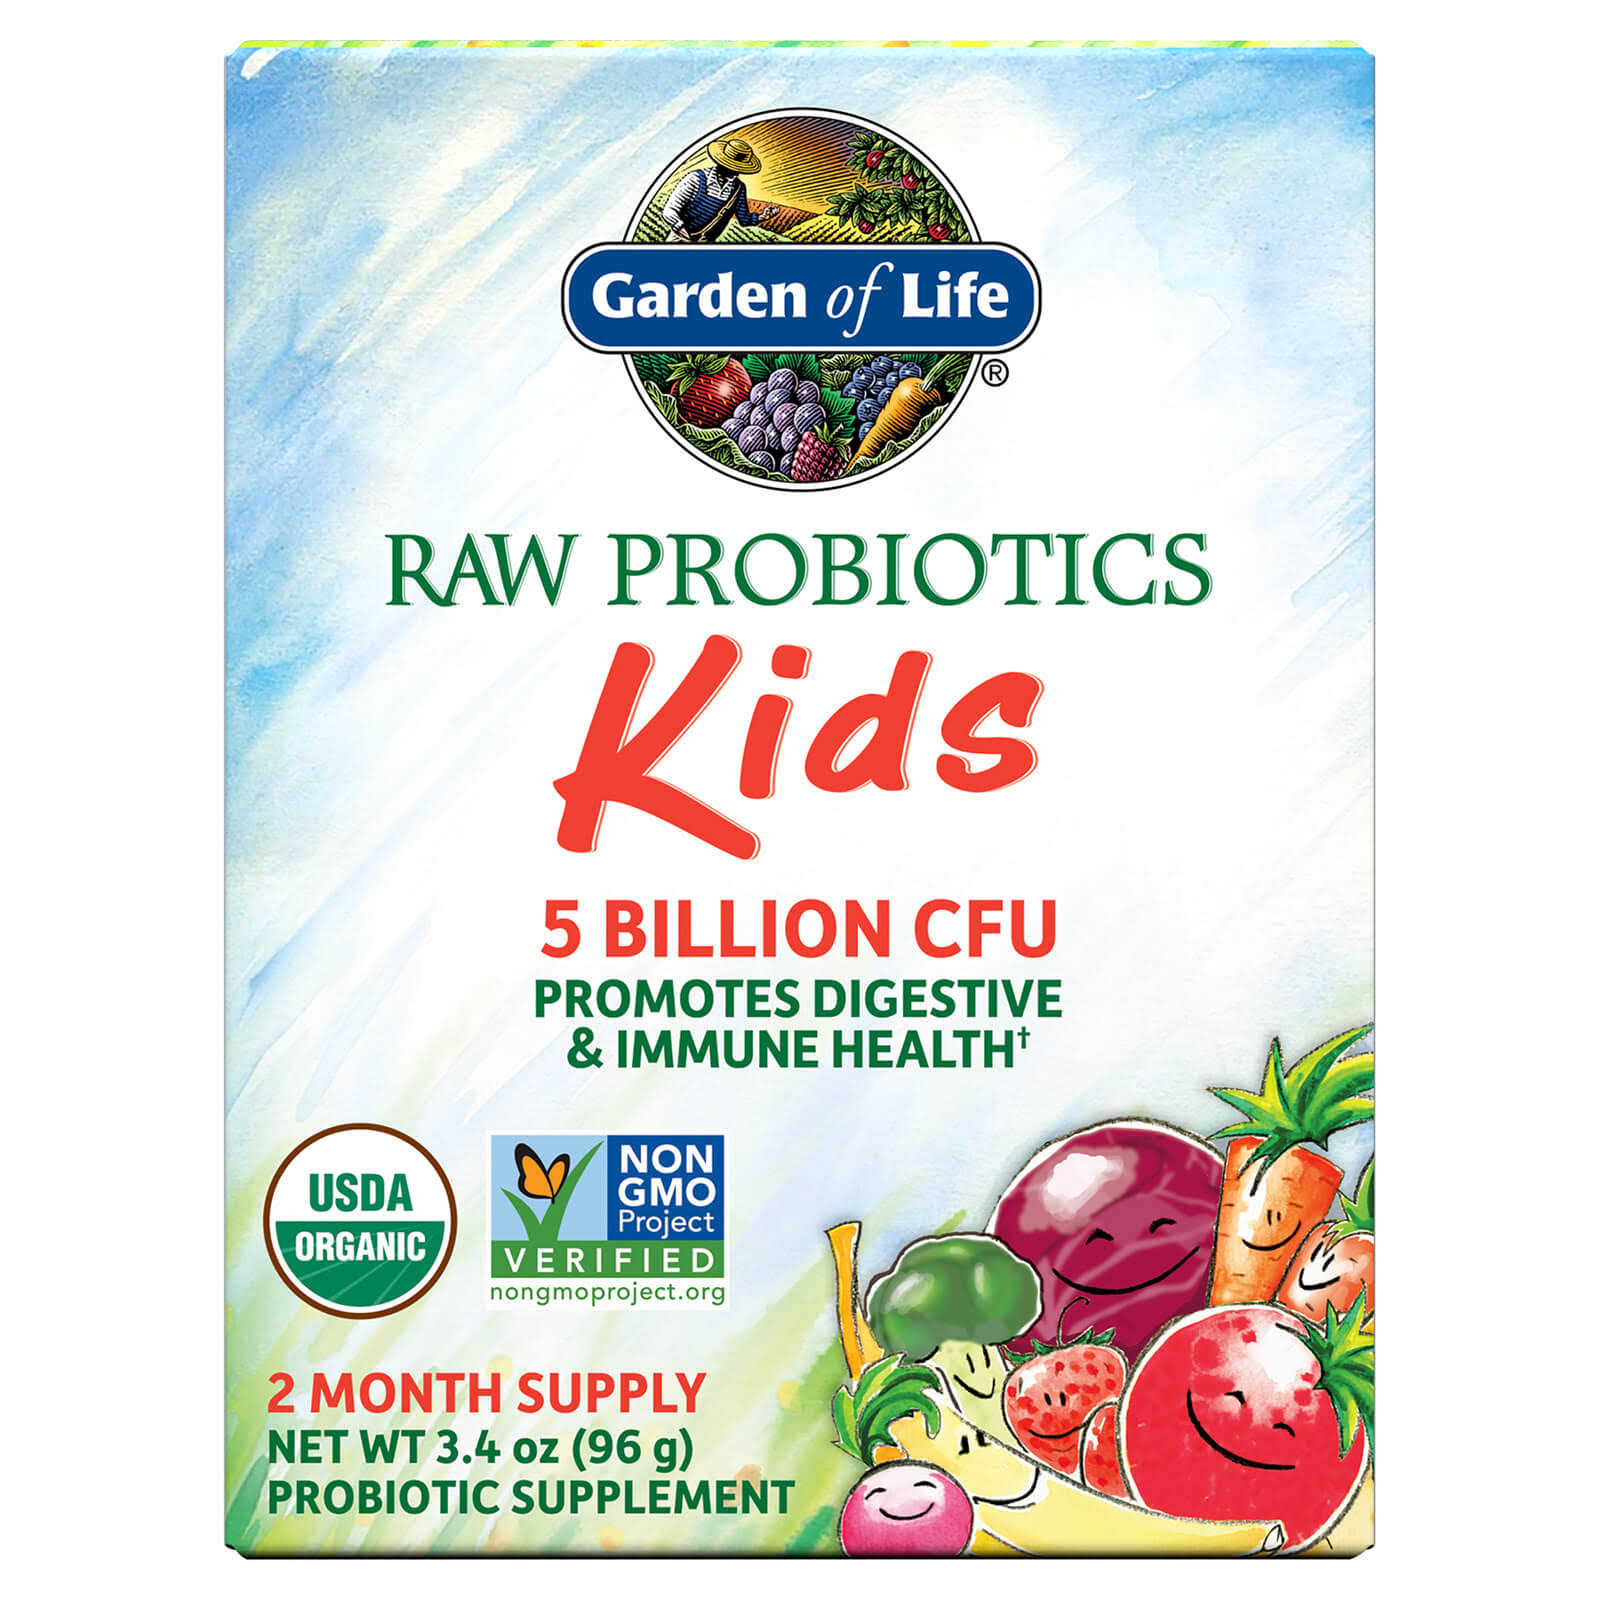 Garden of Life Raw Probiotic Kids Dietary Supplement - 96g